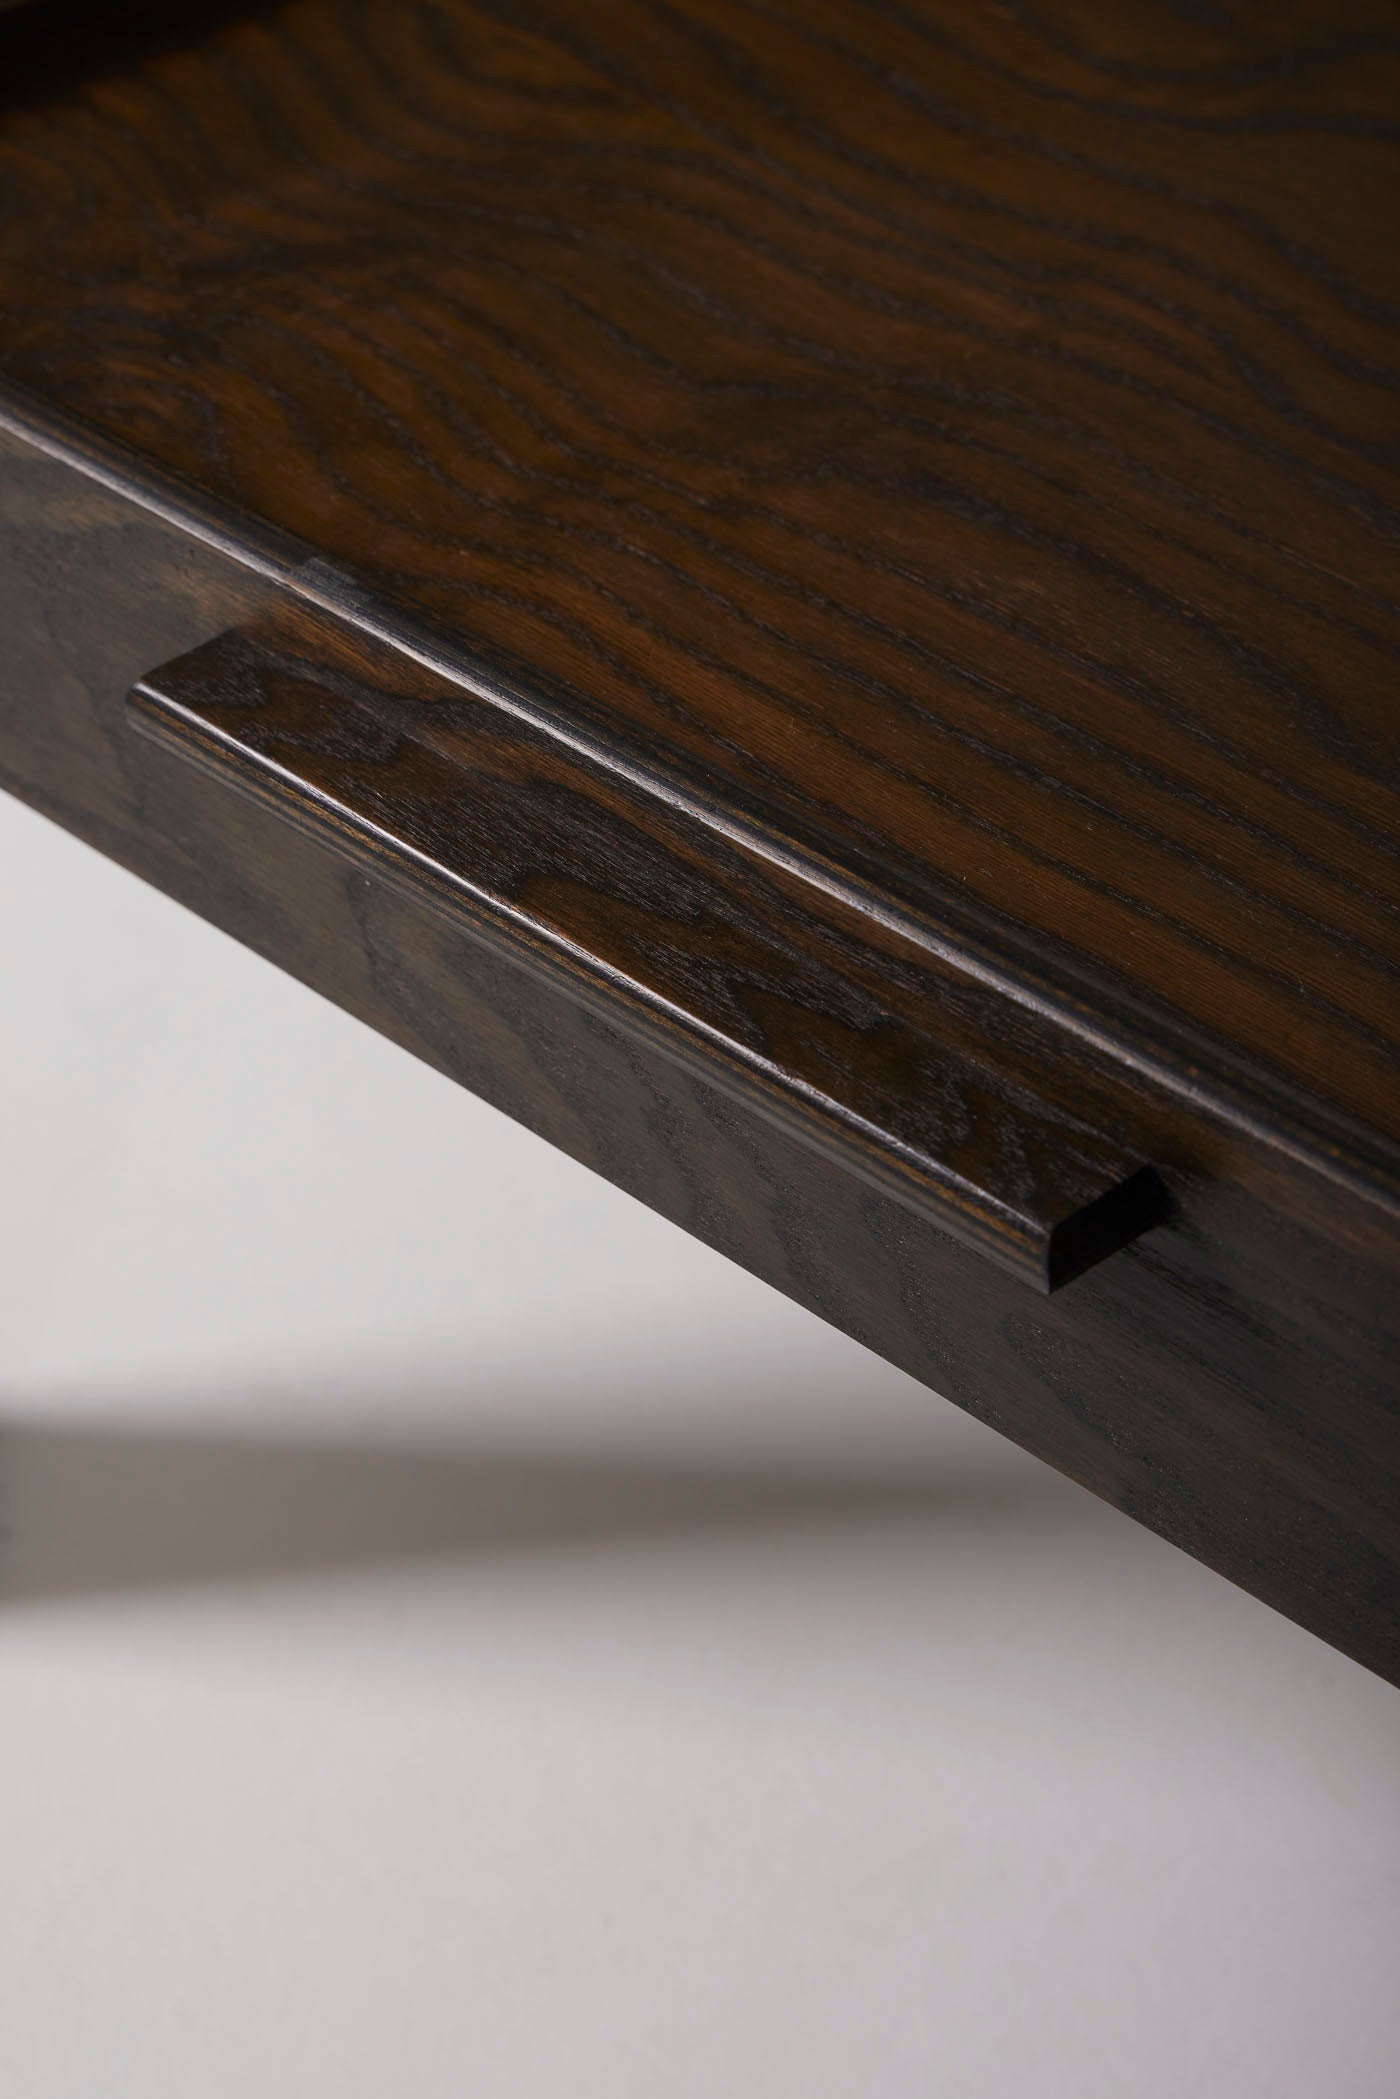 Arne Jacobsen coffee table